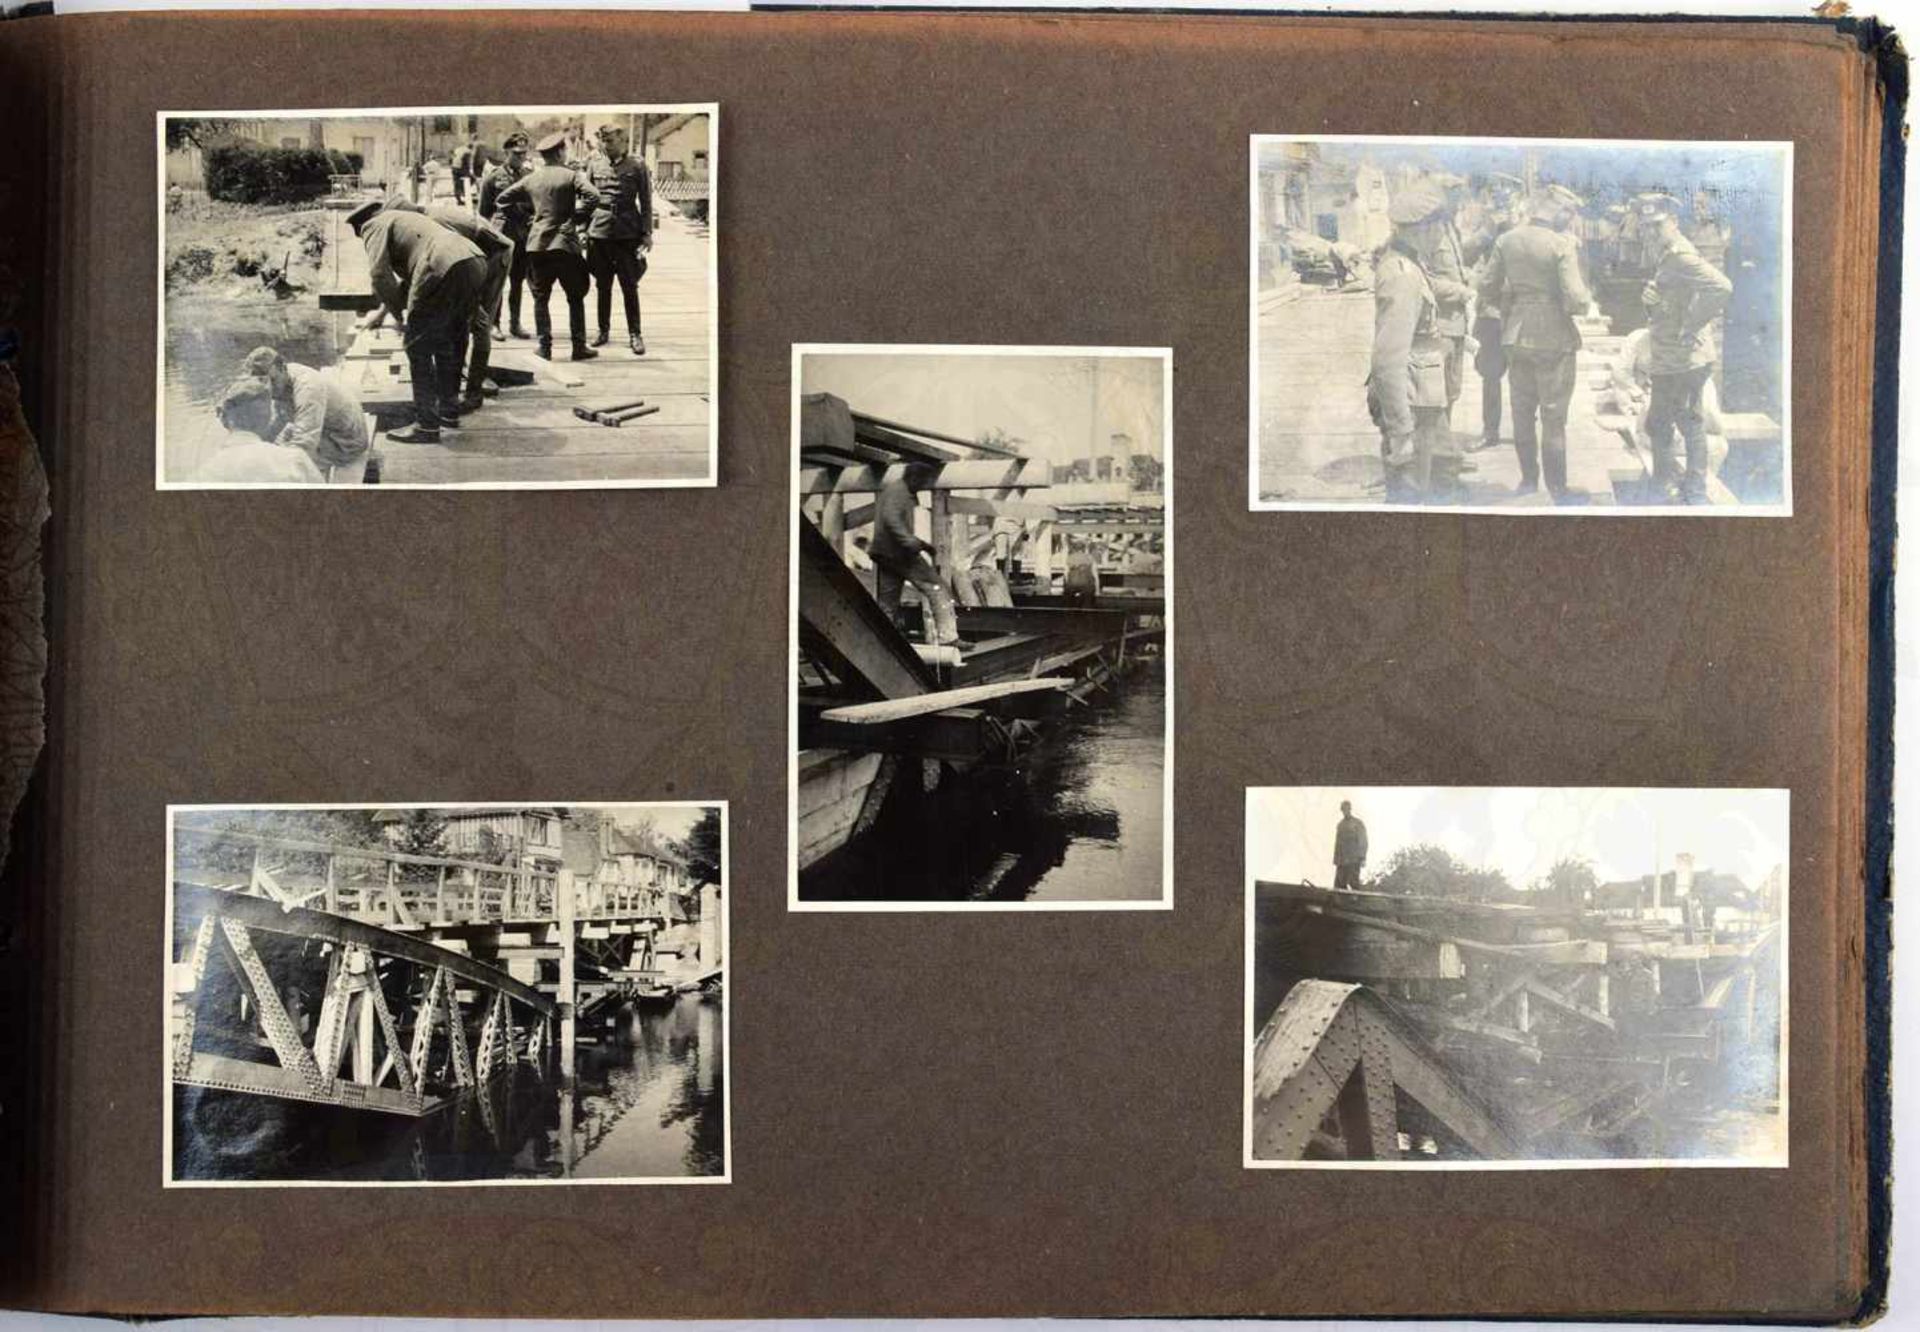 FOTOALBUM, m. 97 Fotos, meist Brückenbau in Frankreich, Abtragen zerst. Straßen- u. Bogenbrücken, - Bild 3 aus 3